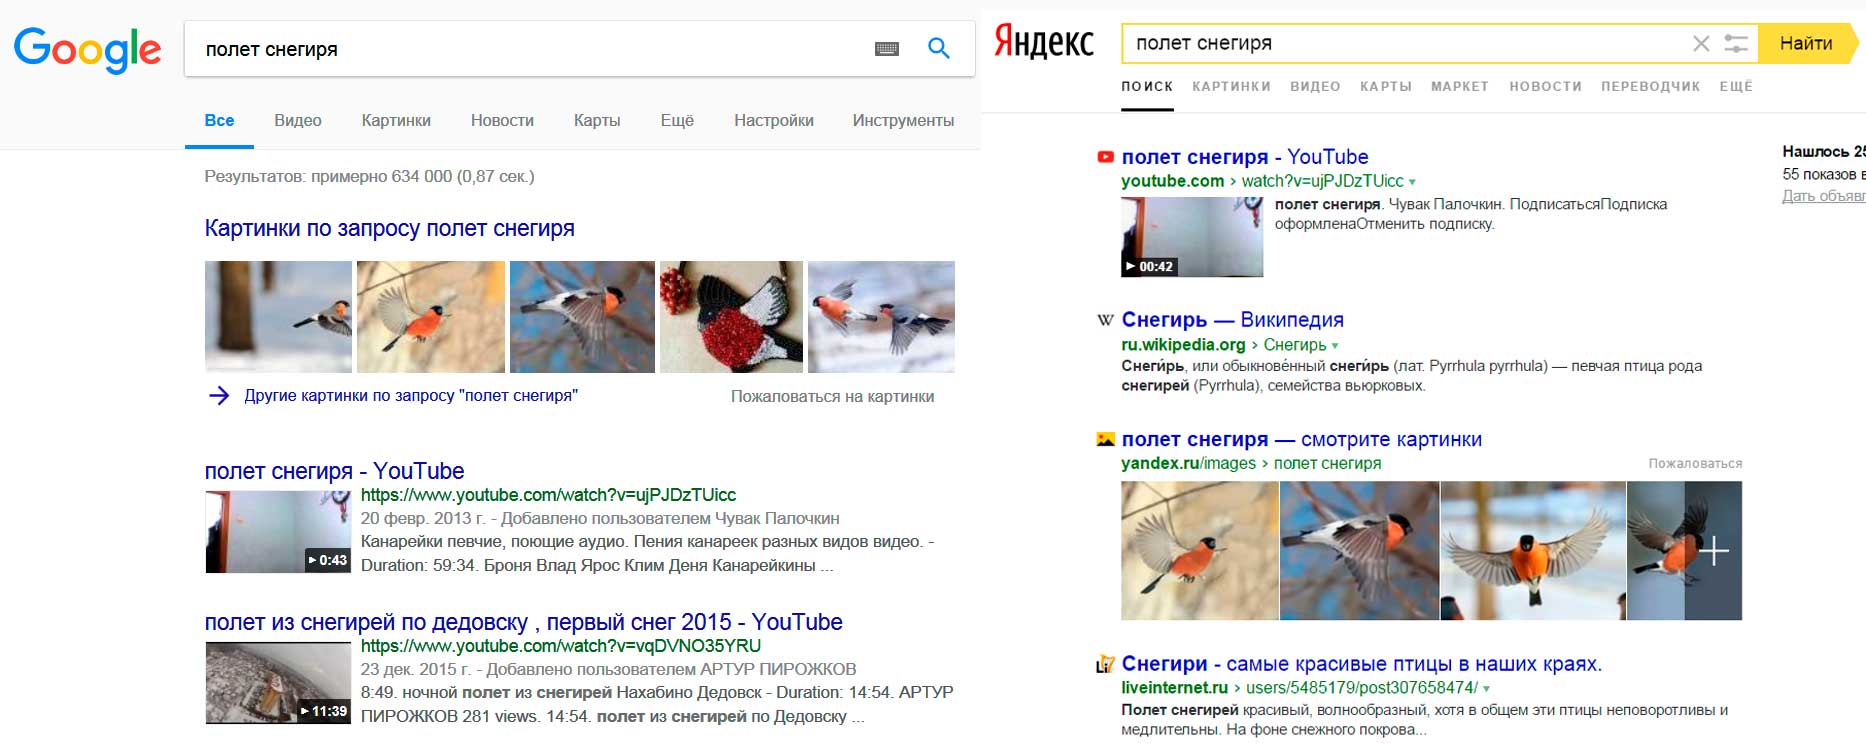 Вертикальный поиск Яндекс и Google